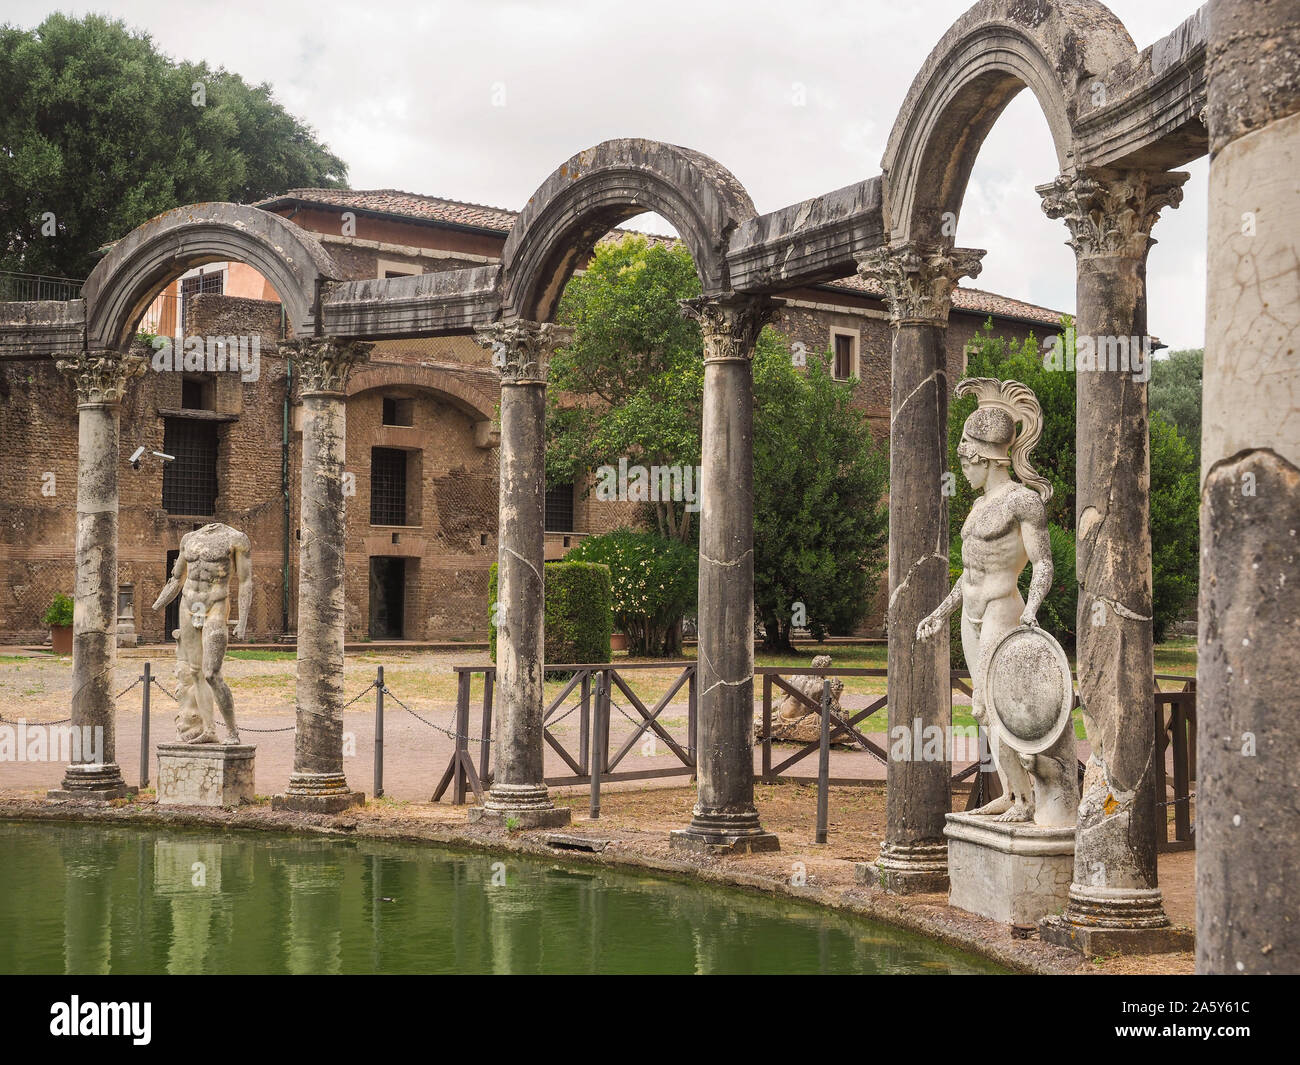 Ruiniert spalten und Alten, Marmor Skulpturen auf der gewölbten Seite des Kanals - pool Canopo, erstellt von Kaiser Hadrian. Archäologischer Park, Villa Adriana. Stockfoto